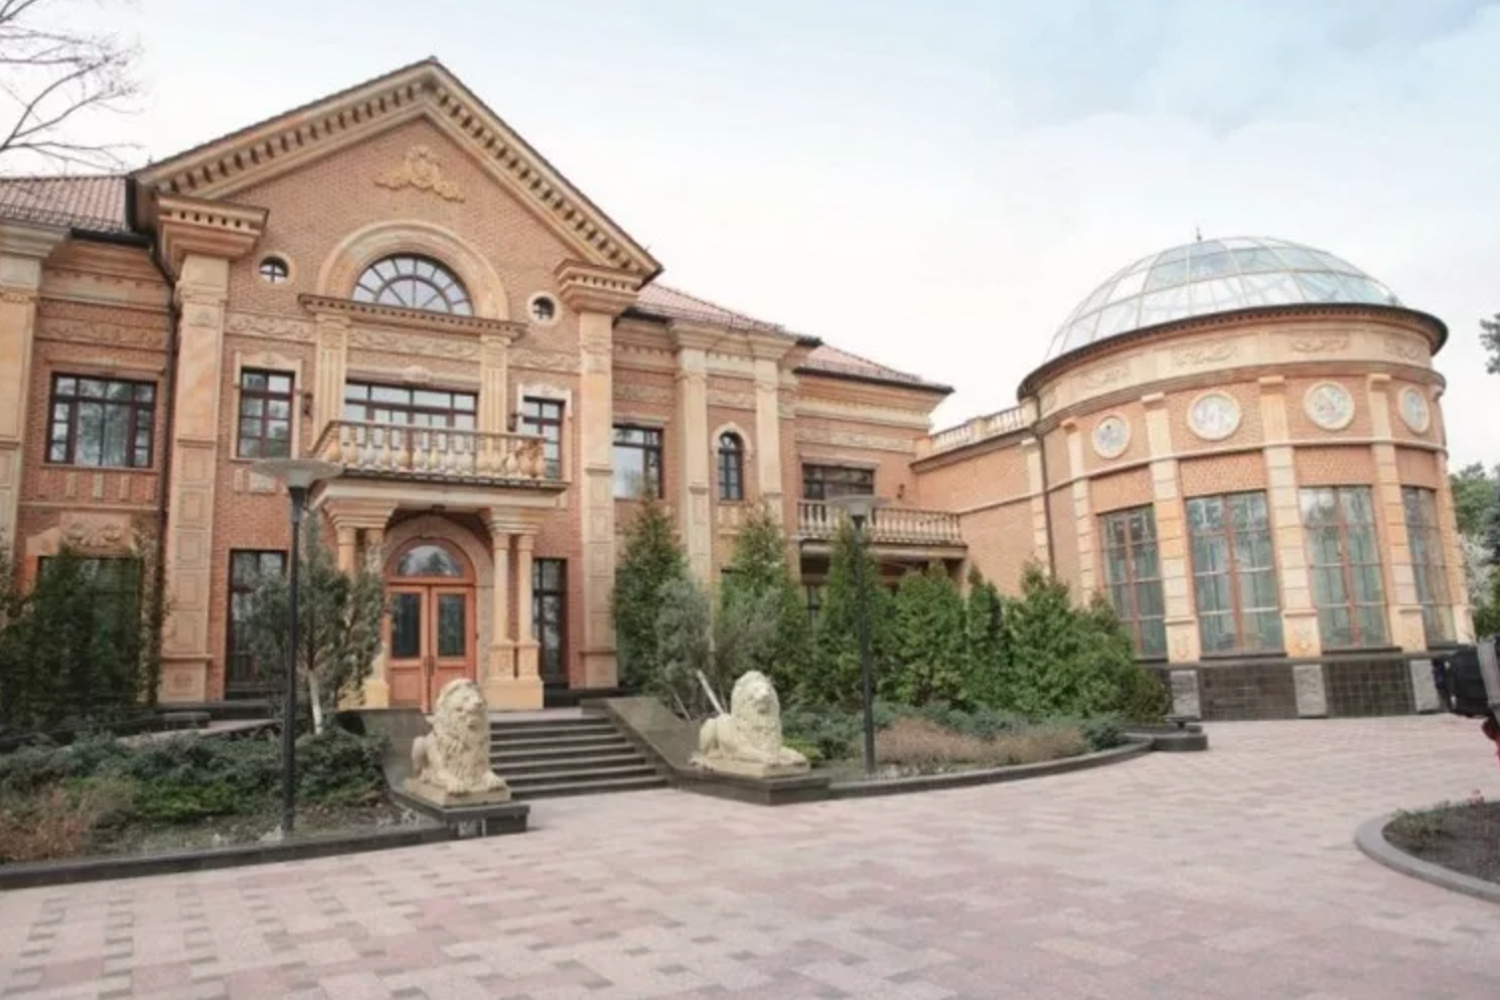 Резиденция президента Украины конча Заспе